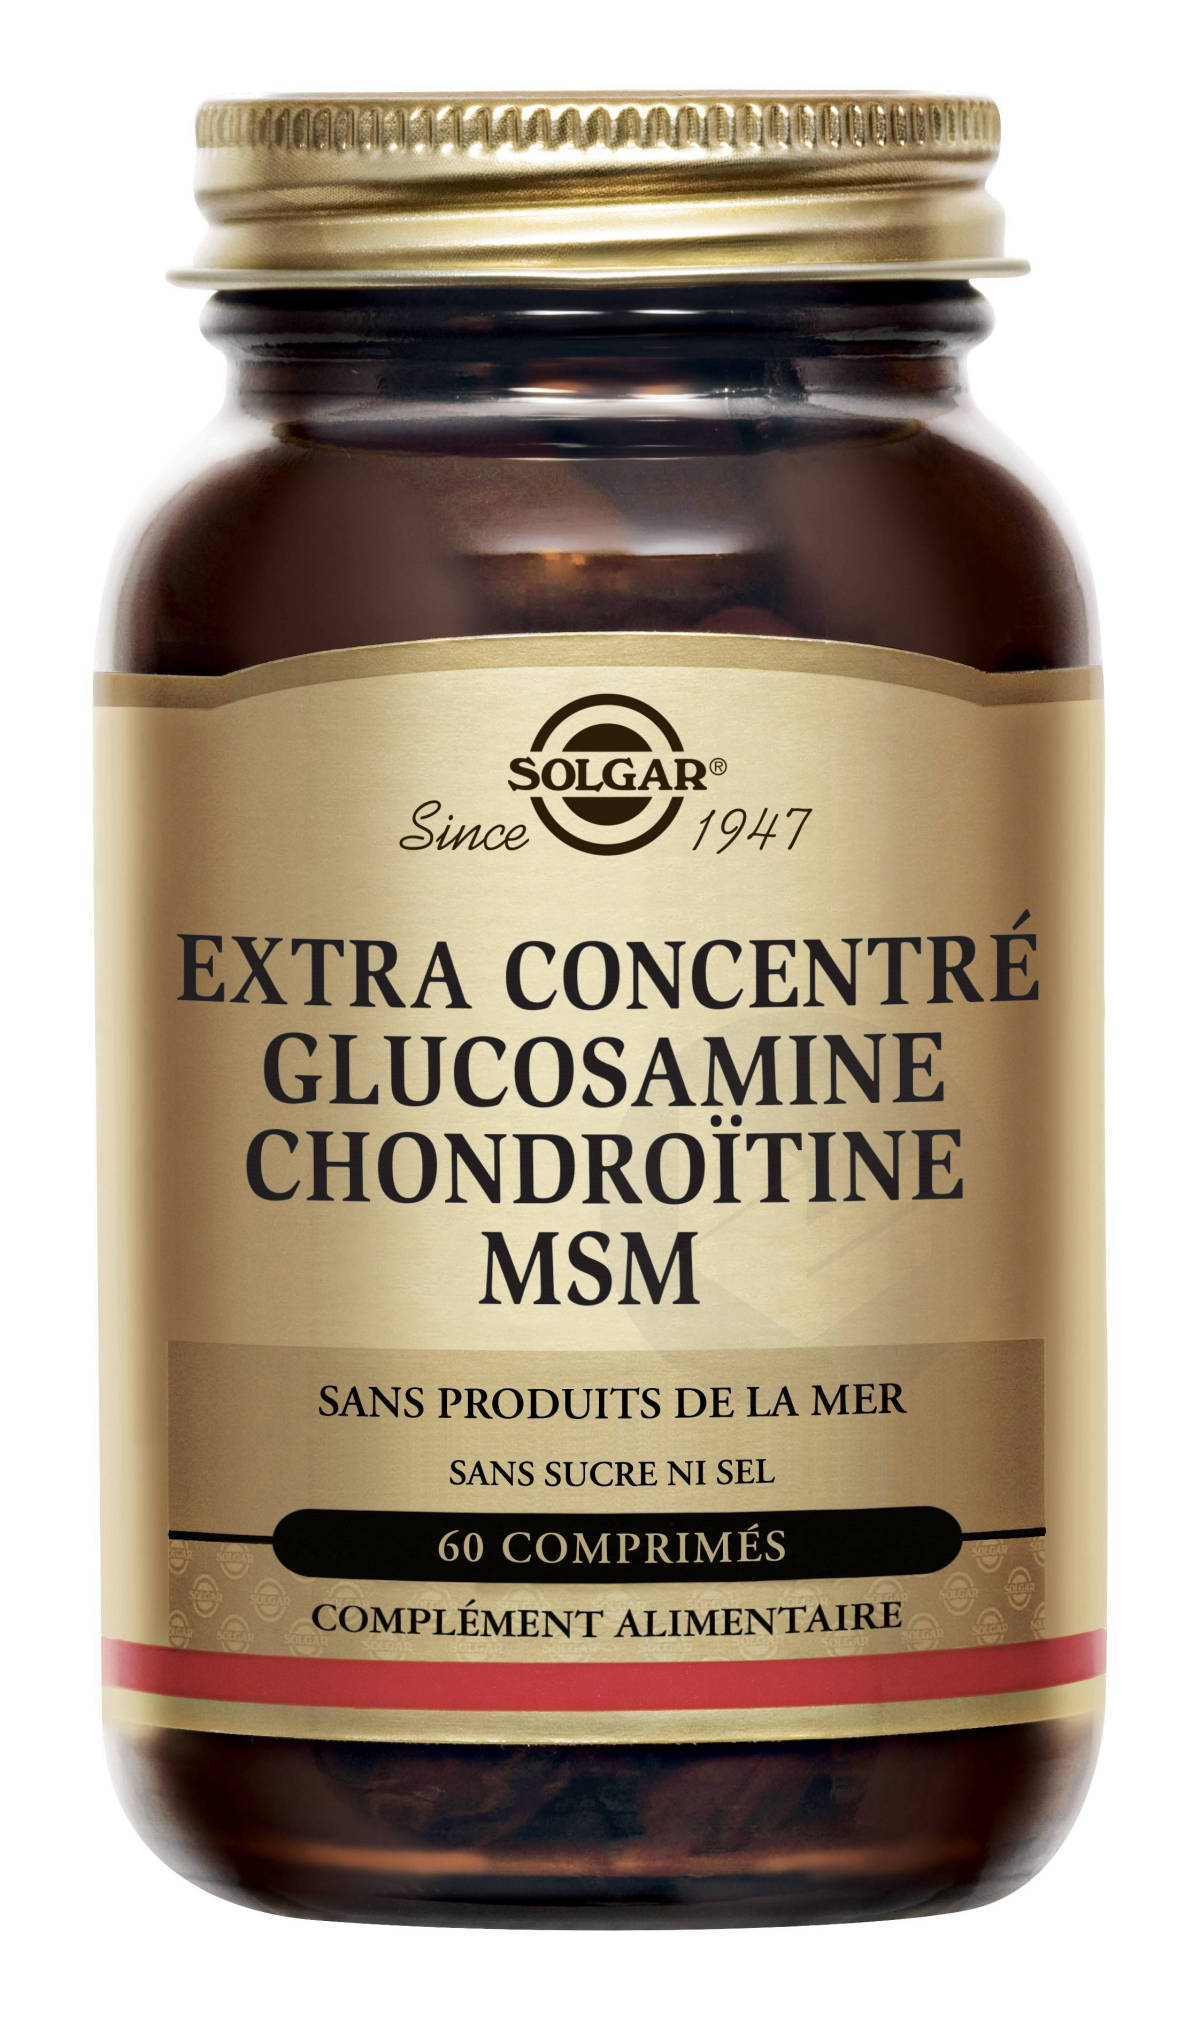 Extra Concentré Glucosamine Chondroïtine MSM 60 comprimés